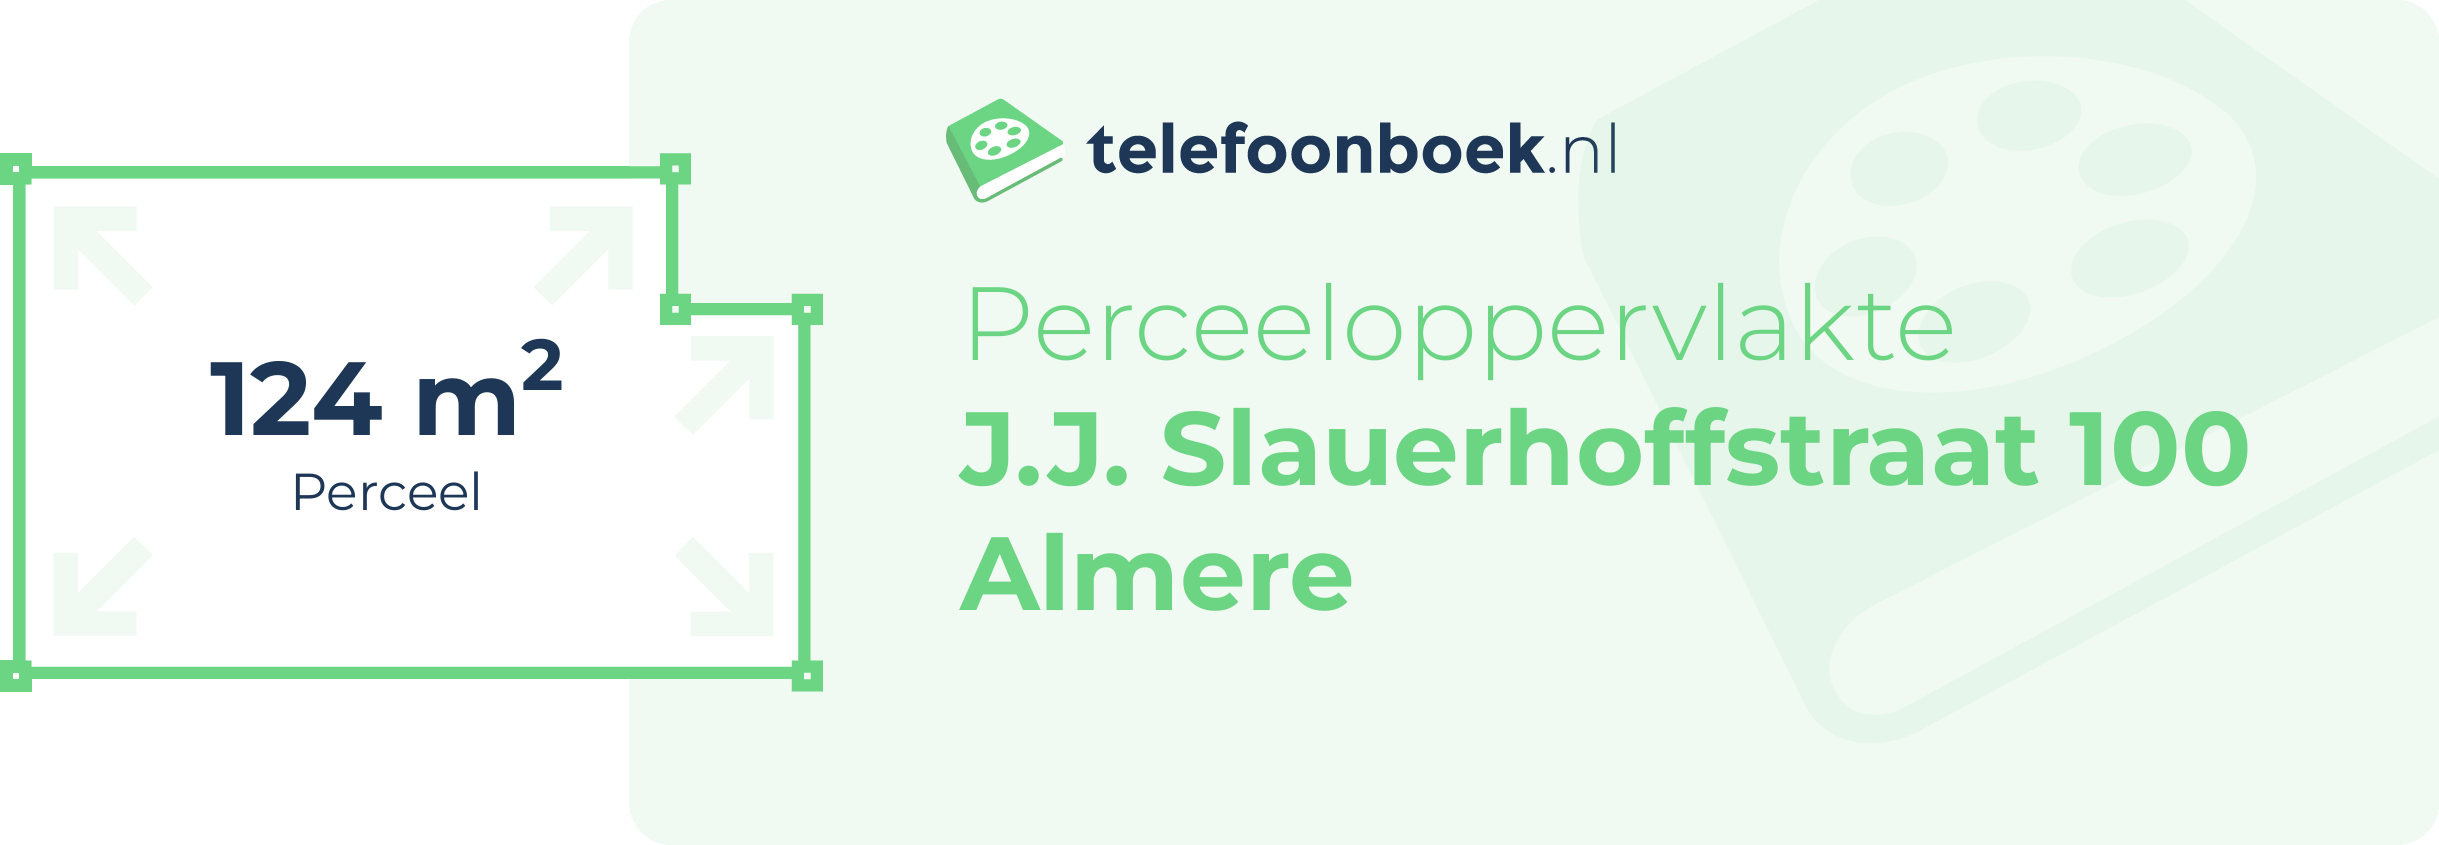 Perceeloppervlakte J.J. Slauerhoffstraat 100 Almere